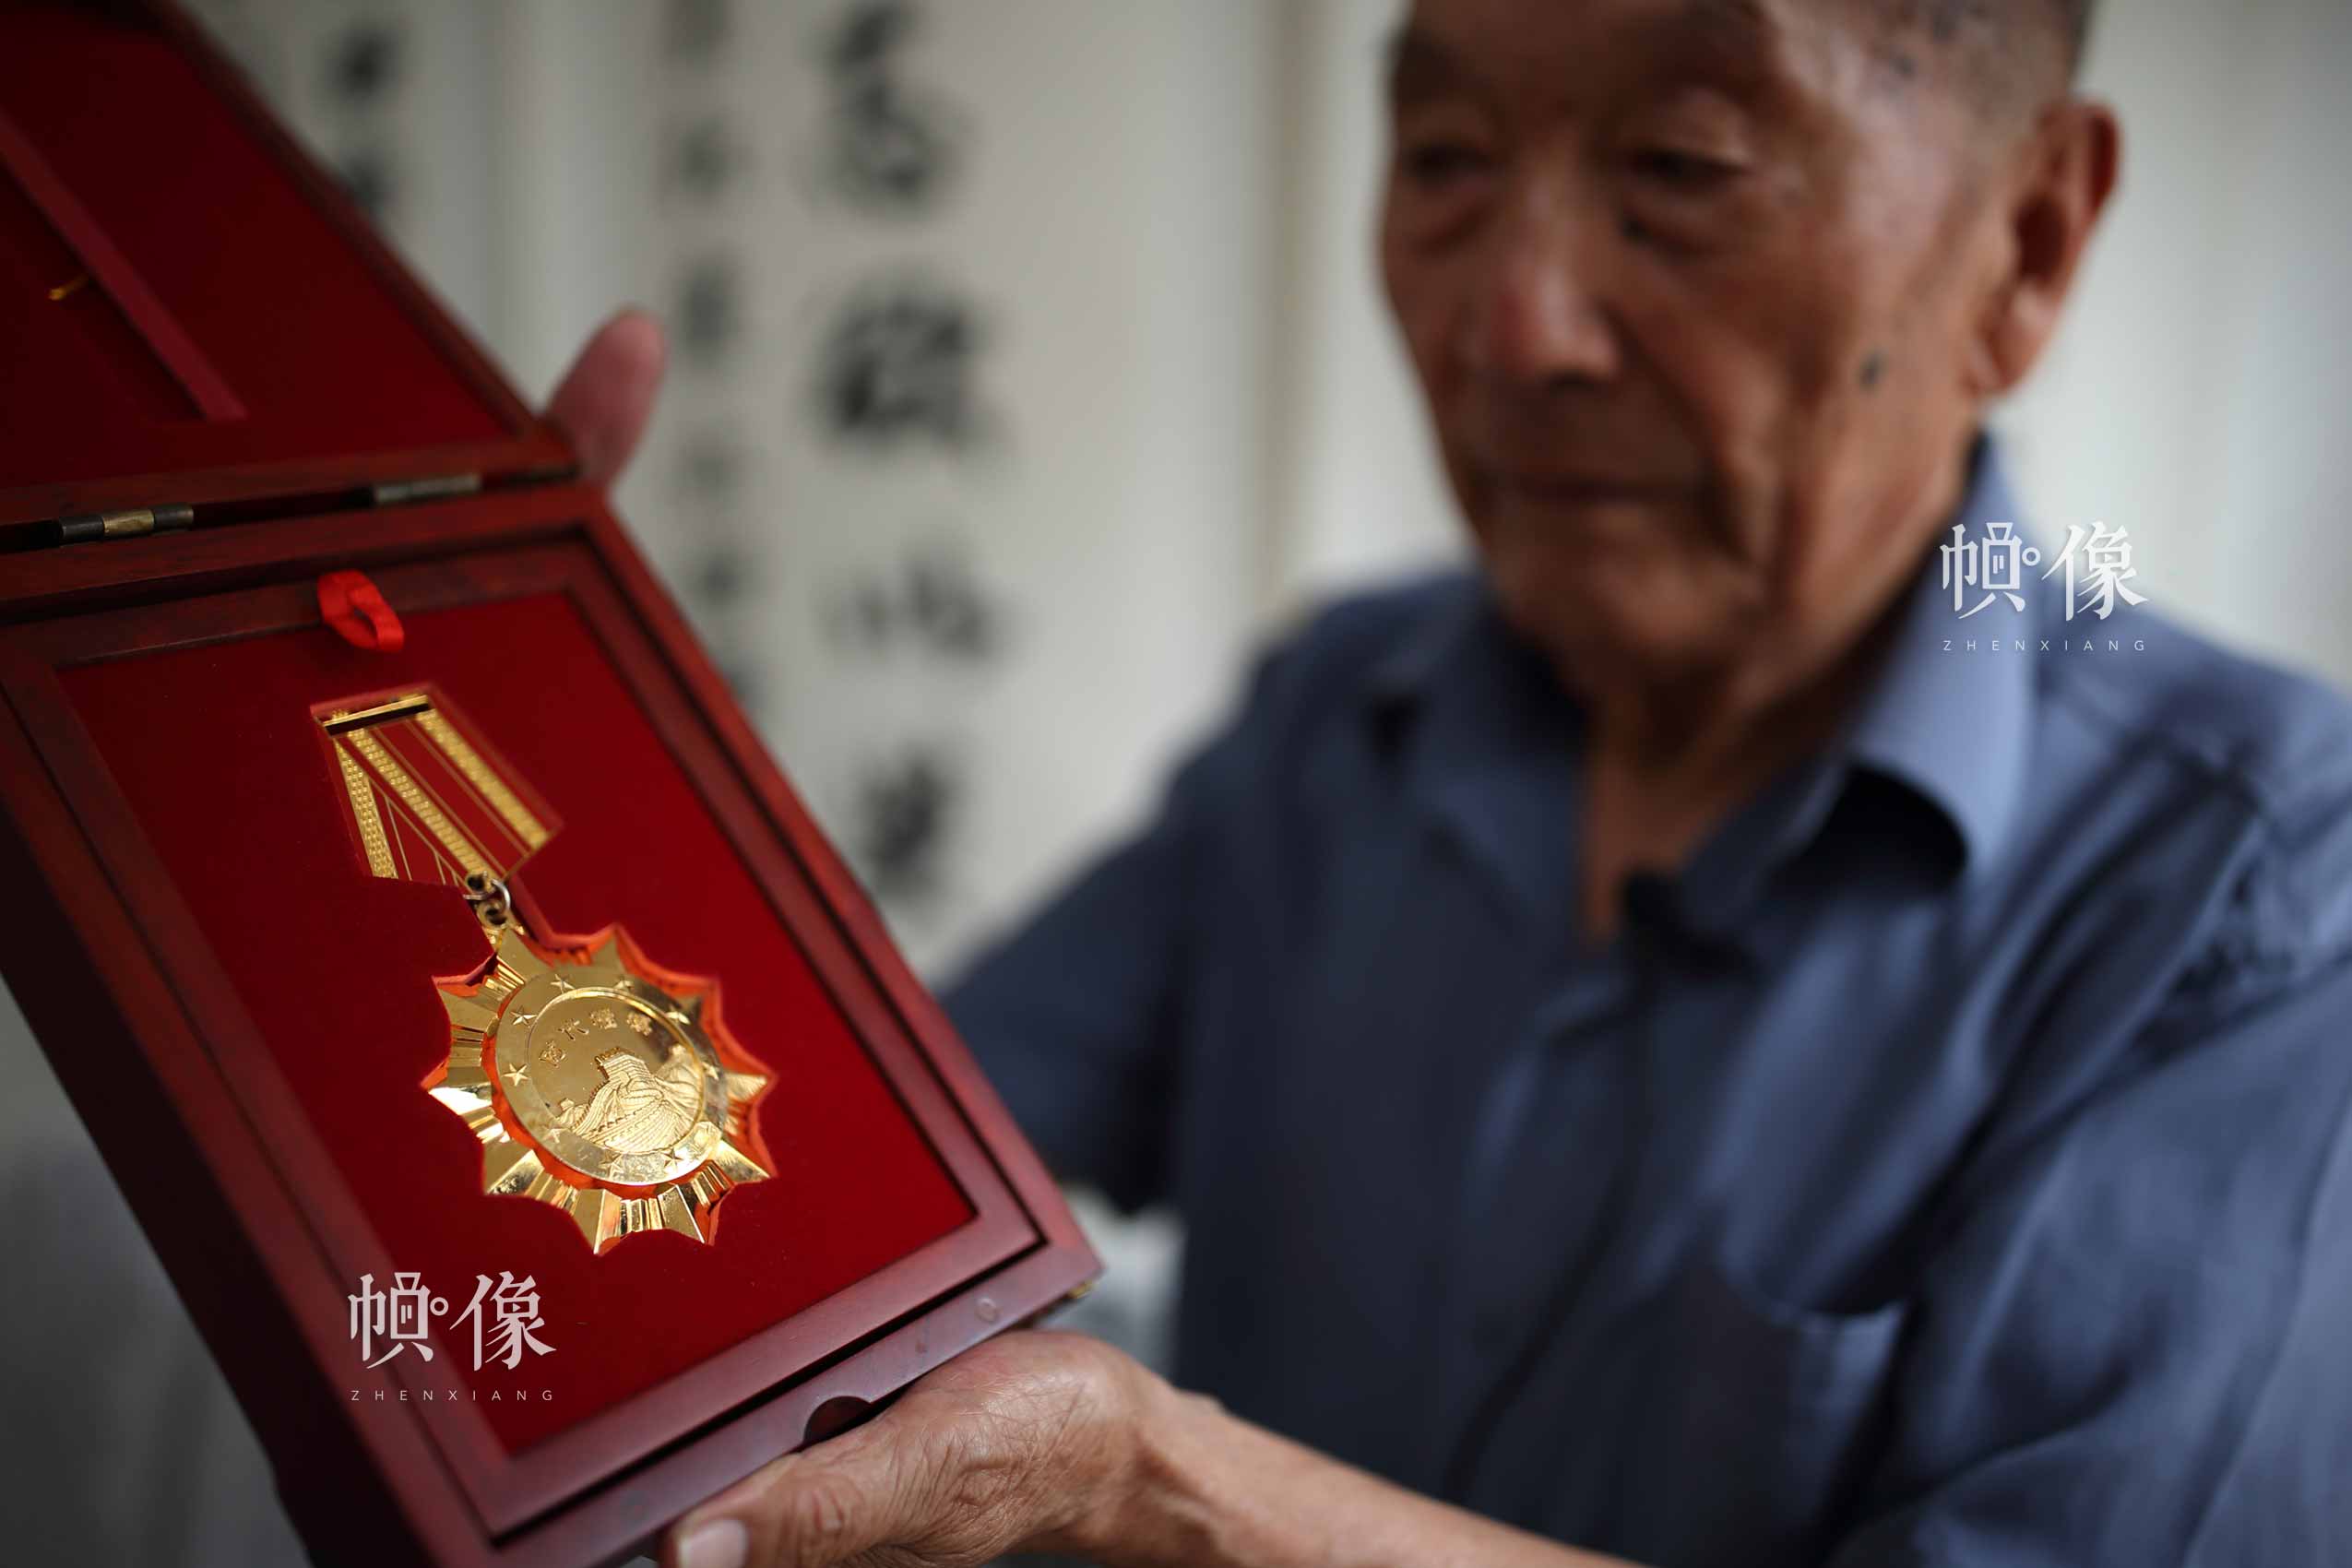 2015年，为纪念中国人民抗日战争暨世界反法西斯战争胜利70周年、弘扬抗战精神，中宣部向郑福来颁发了“时代楷模”纪念章和荣誉证书。中国网记者 陈维松 摄 